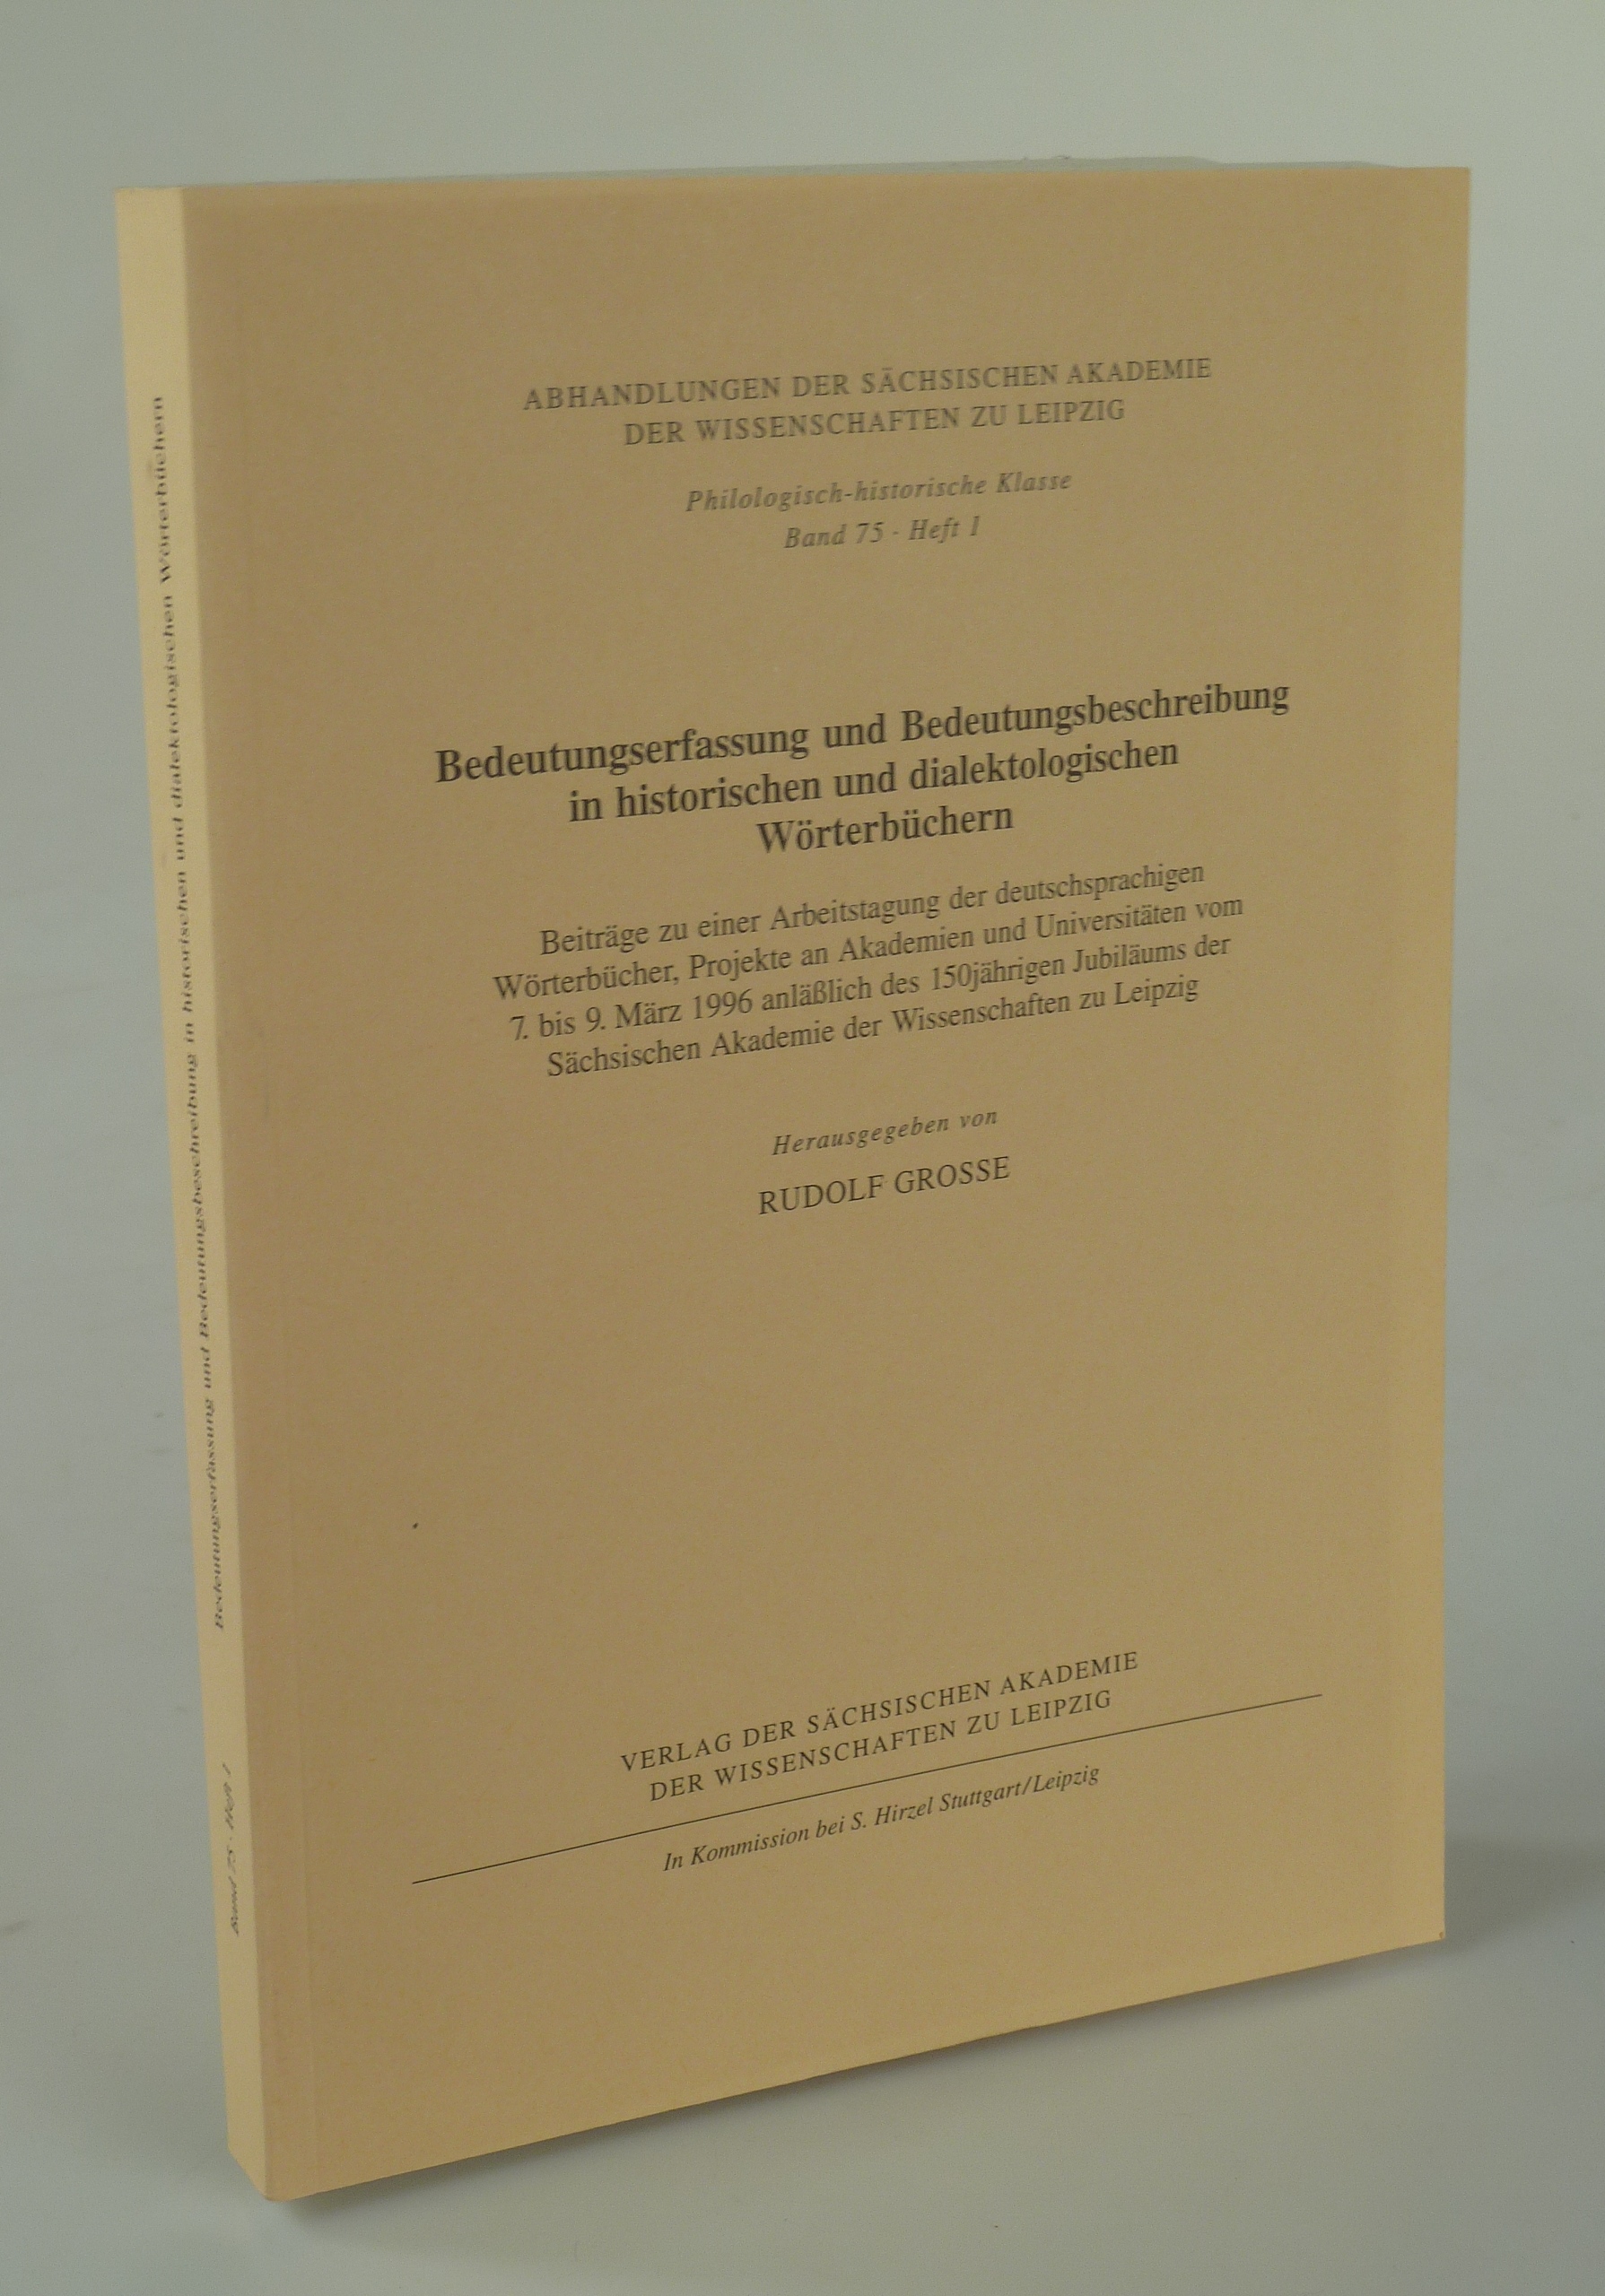 Bedeutungserfassung und Bedeutungsbeschreibung in historischen und dialektologischen Wörterbüchern. - GROSSE, Rudolf (Hrsg.).